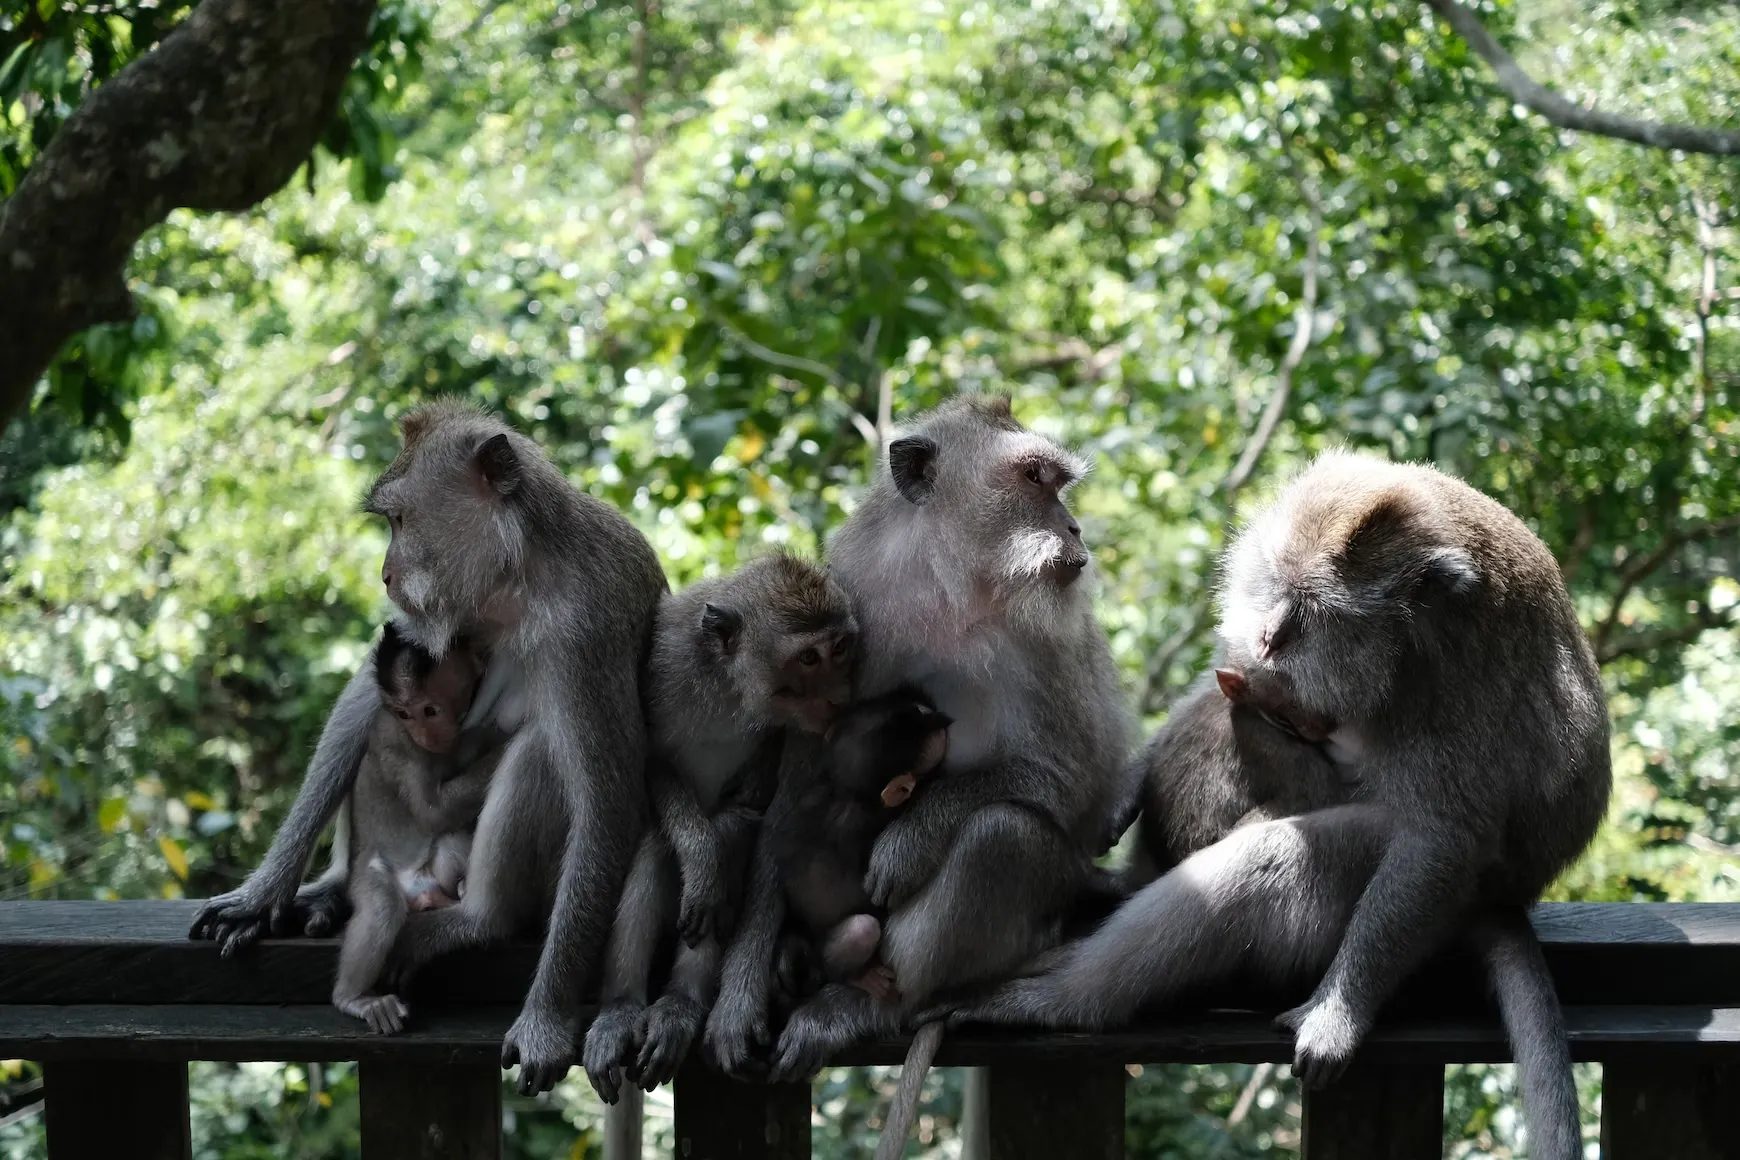 Ubud Monkey Forest, Bali. Source: Photo by vov vov/unsplash.com